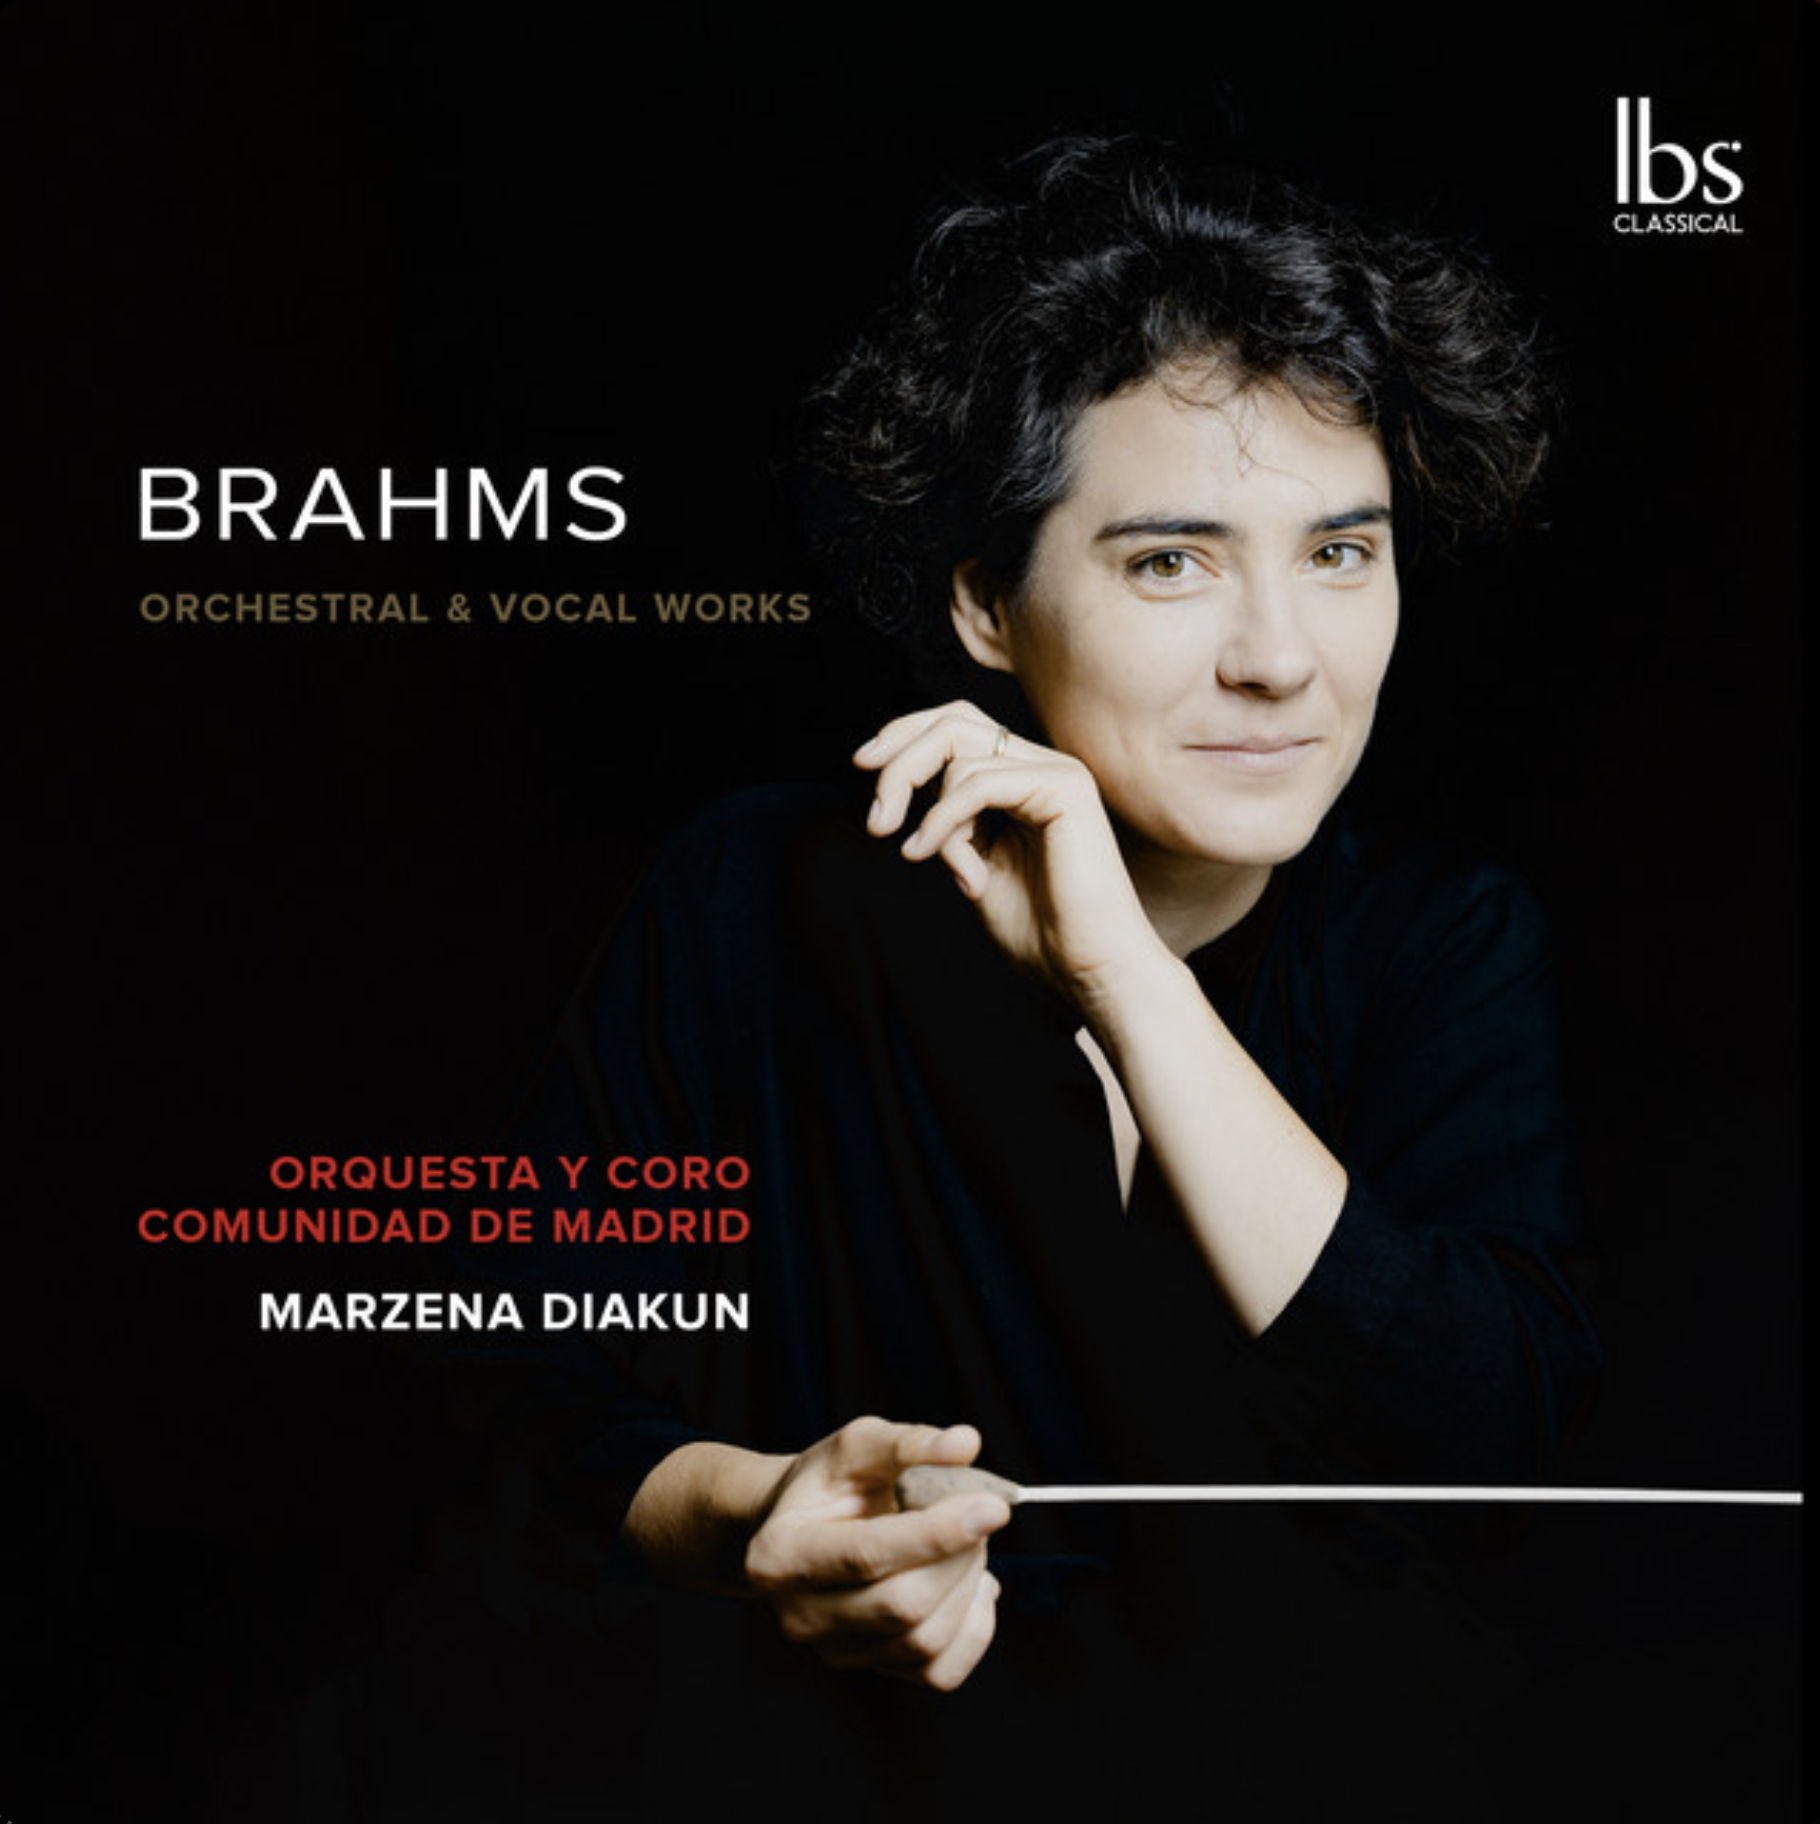 Brahms Orchestal & Vocal Works